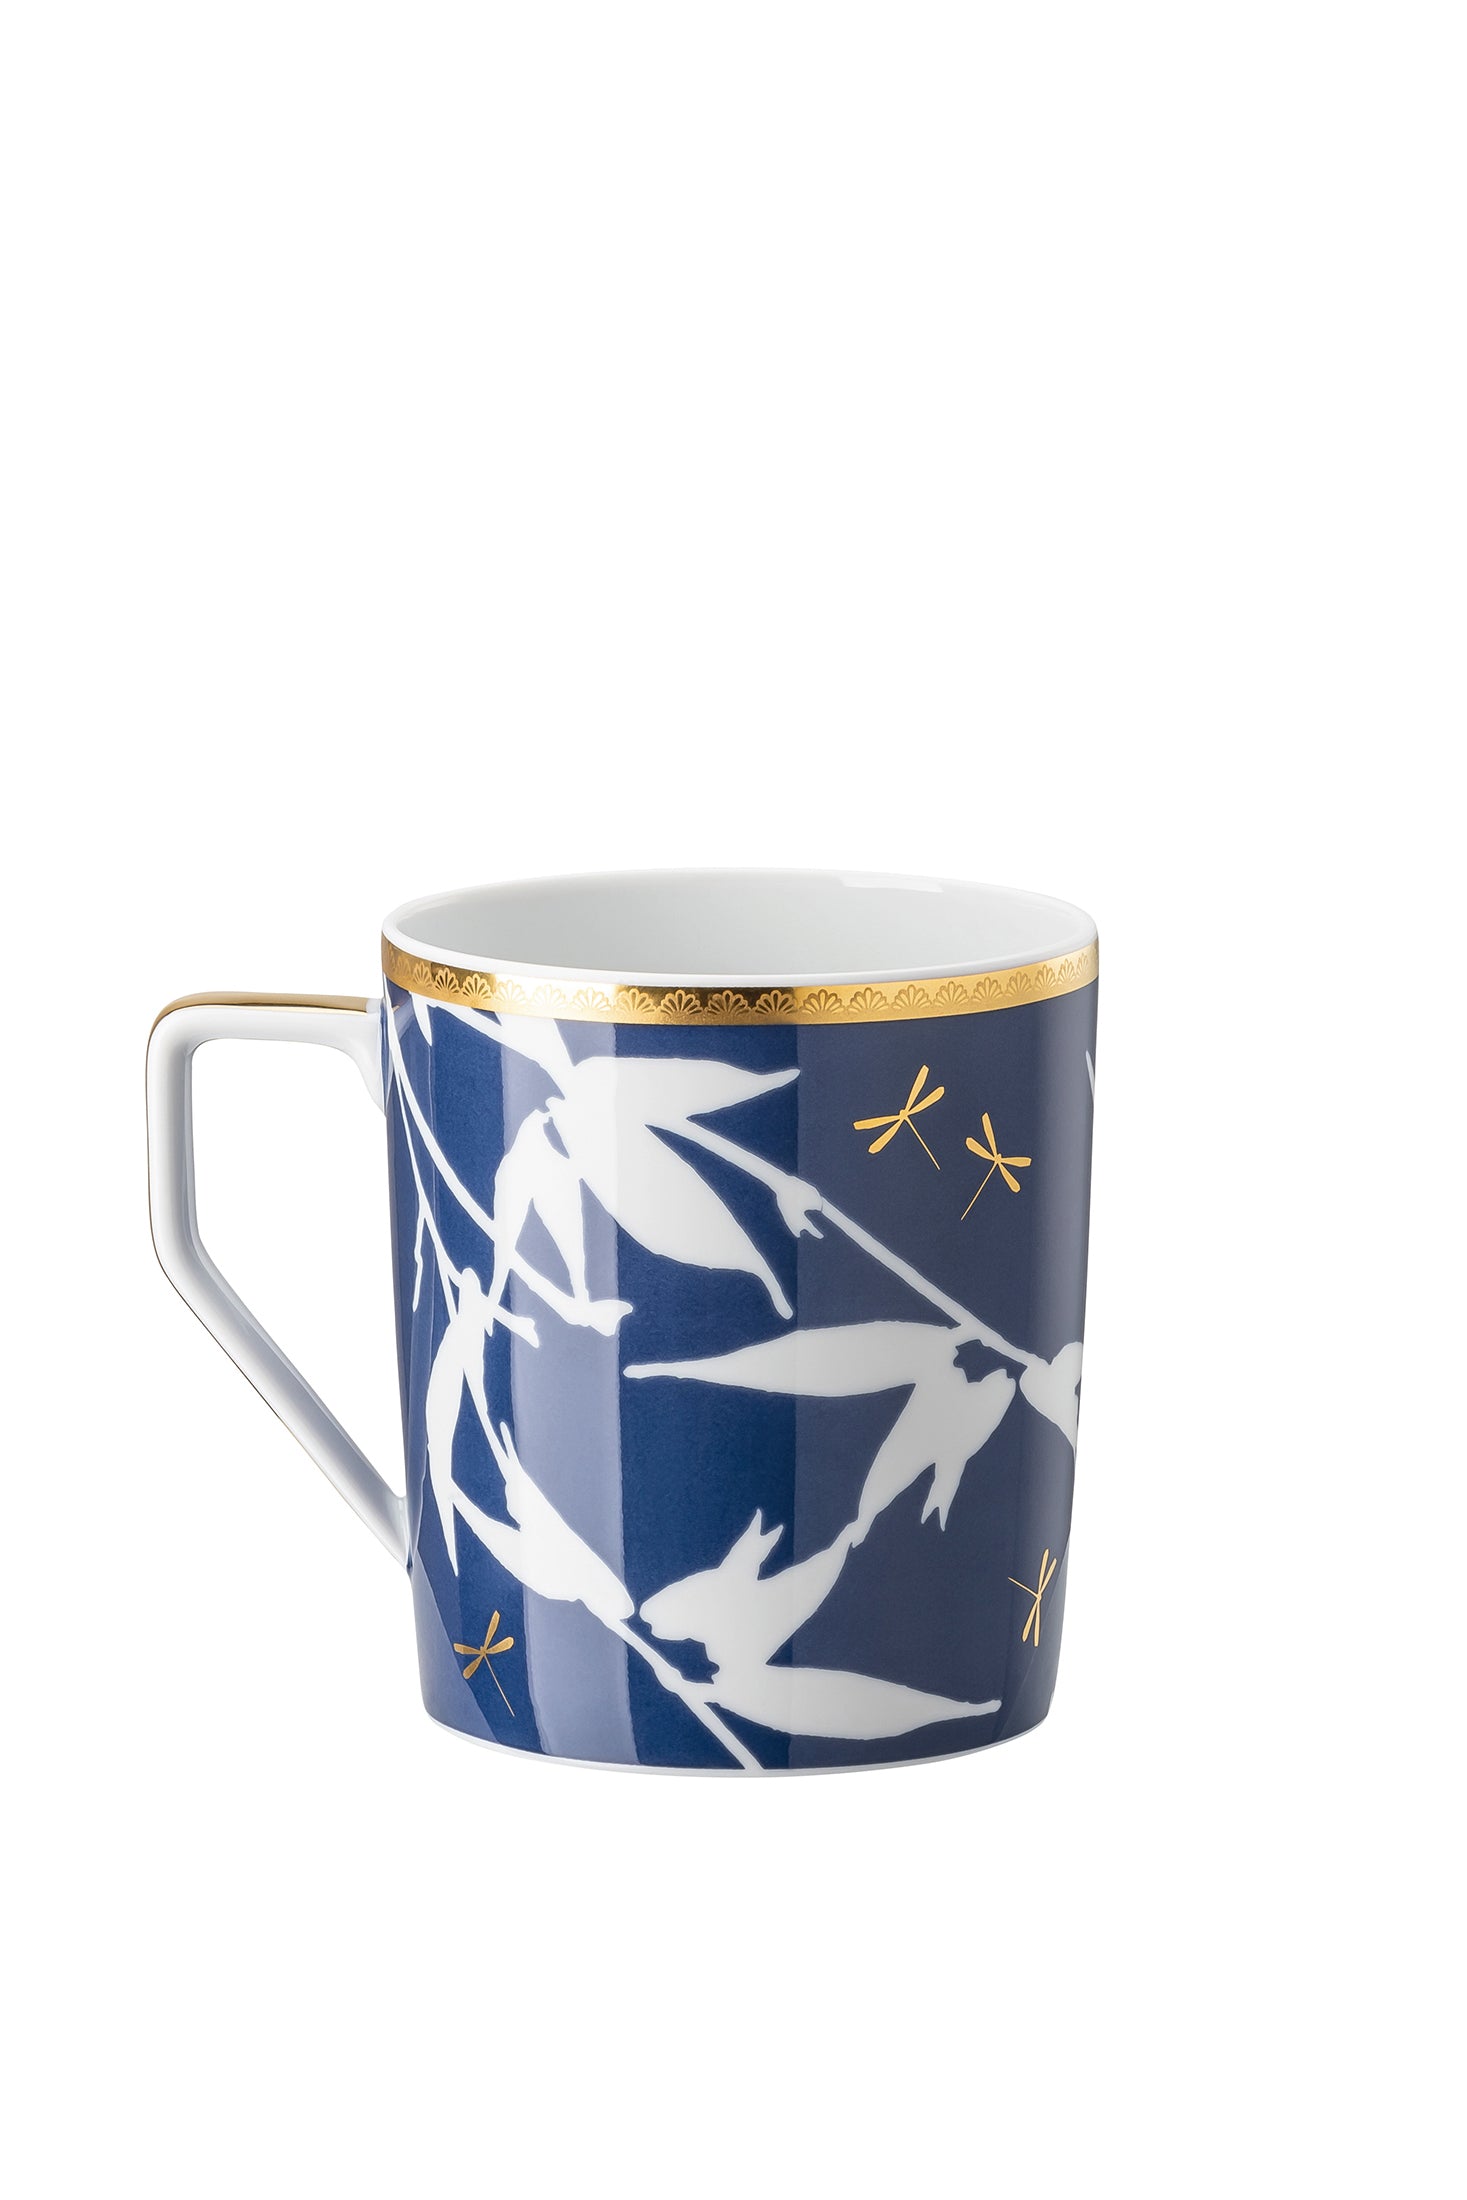 Rosenthal Turandot - Mug With Handle 12 oz Blue